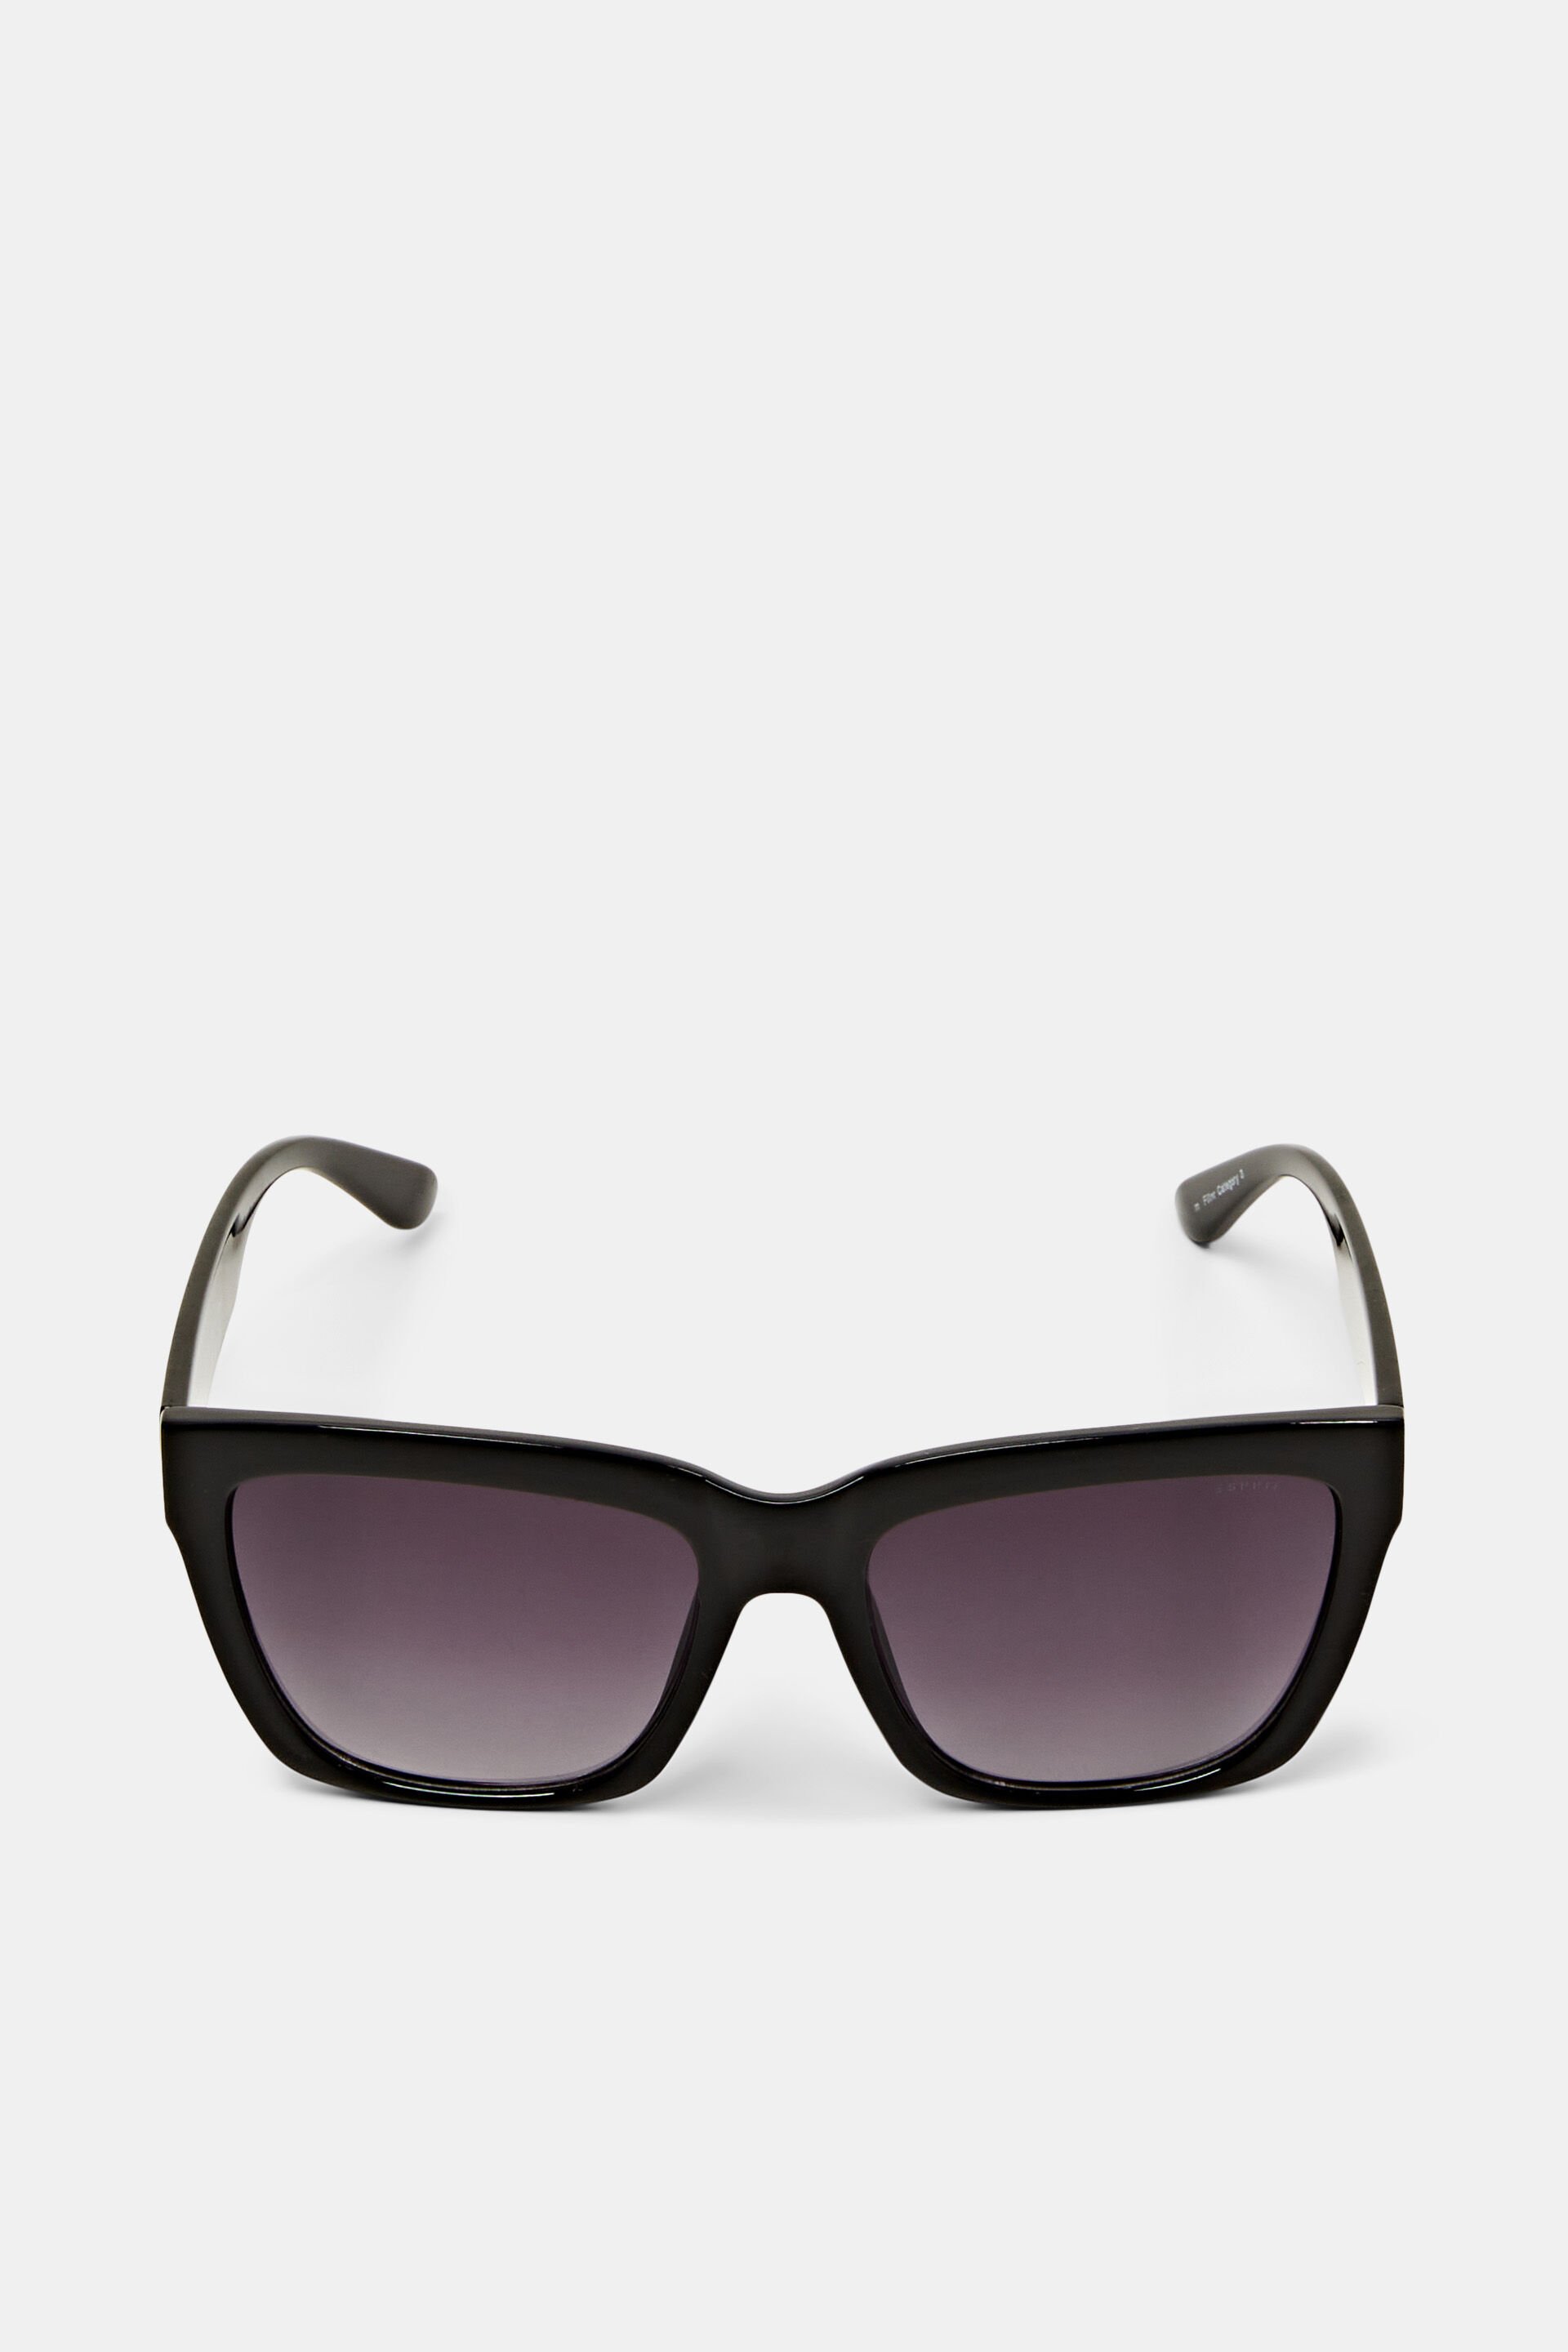 Esprit Bulky sunglasses frame